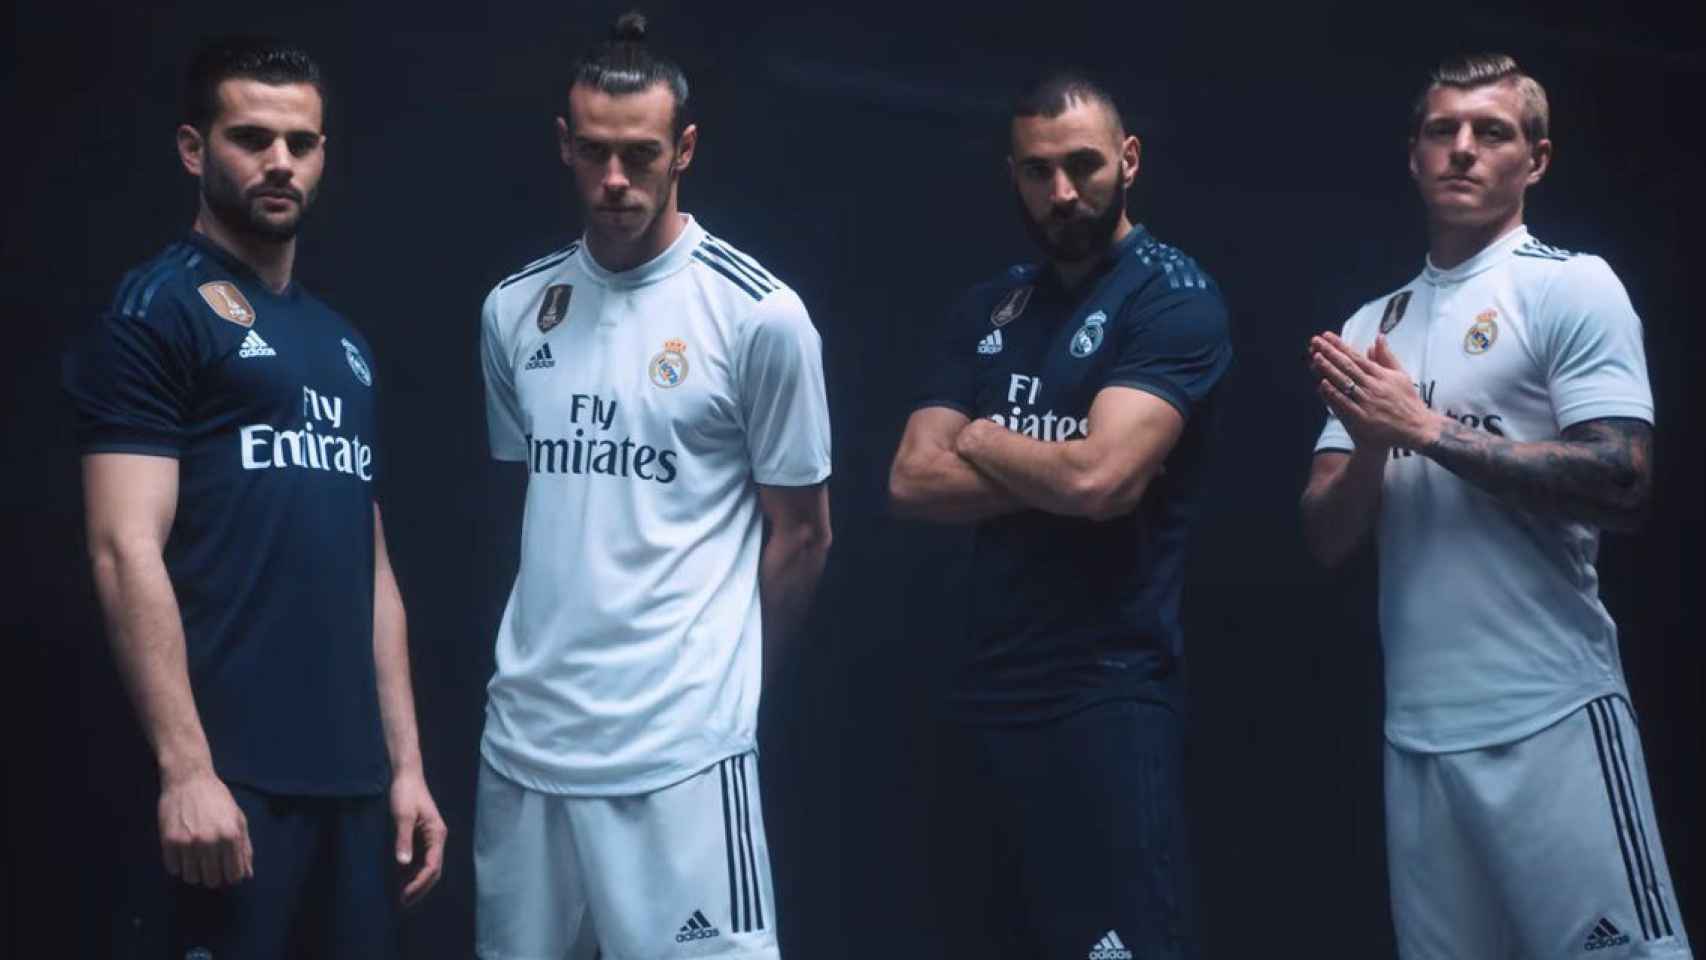 Adidas fichará al Arsenal y nuevo acuerdo con el Real Madrid